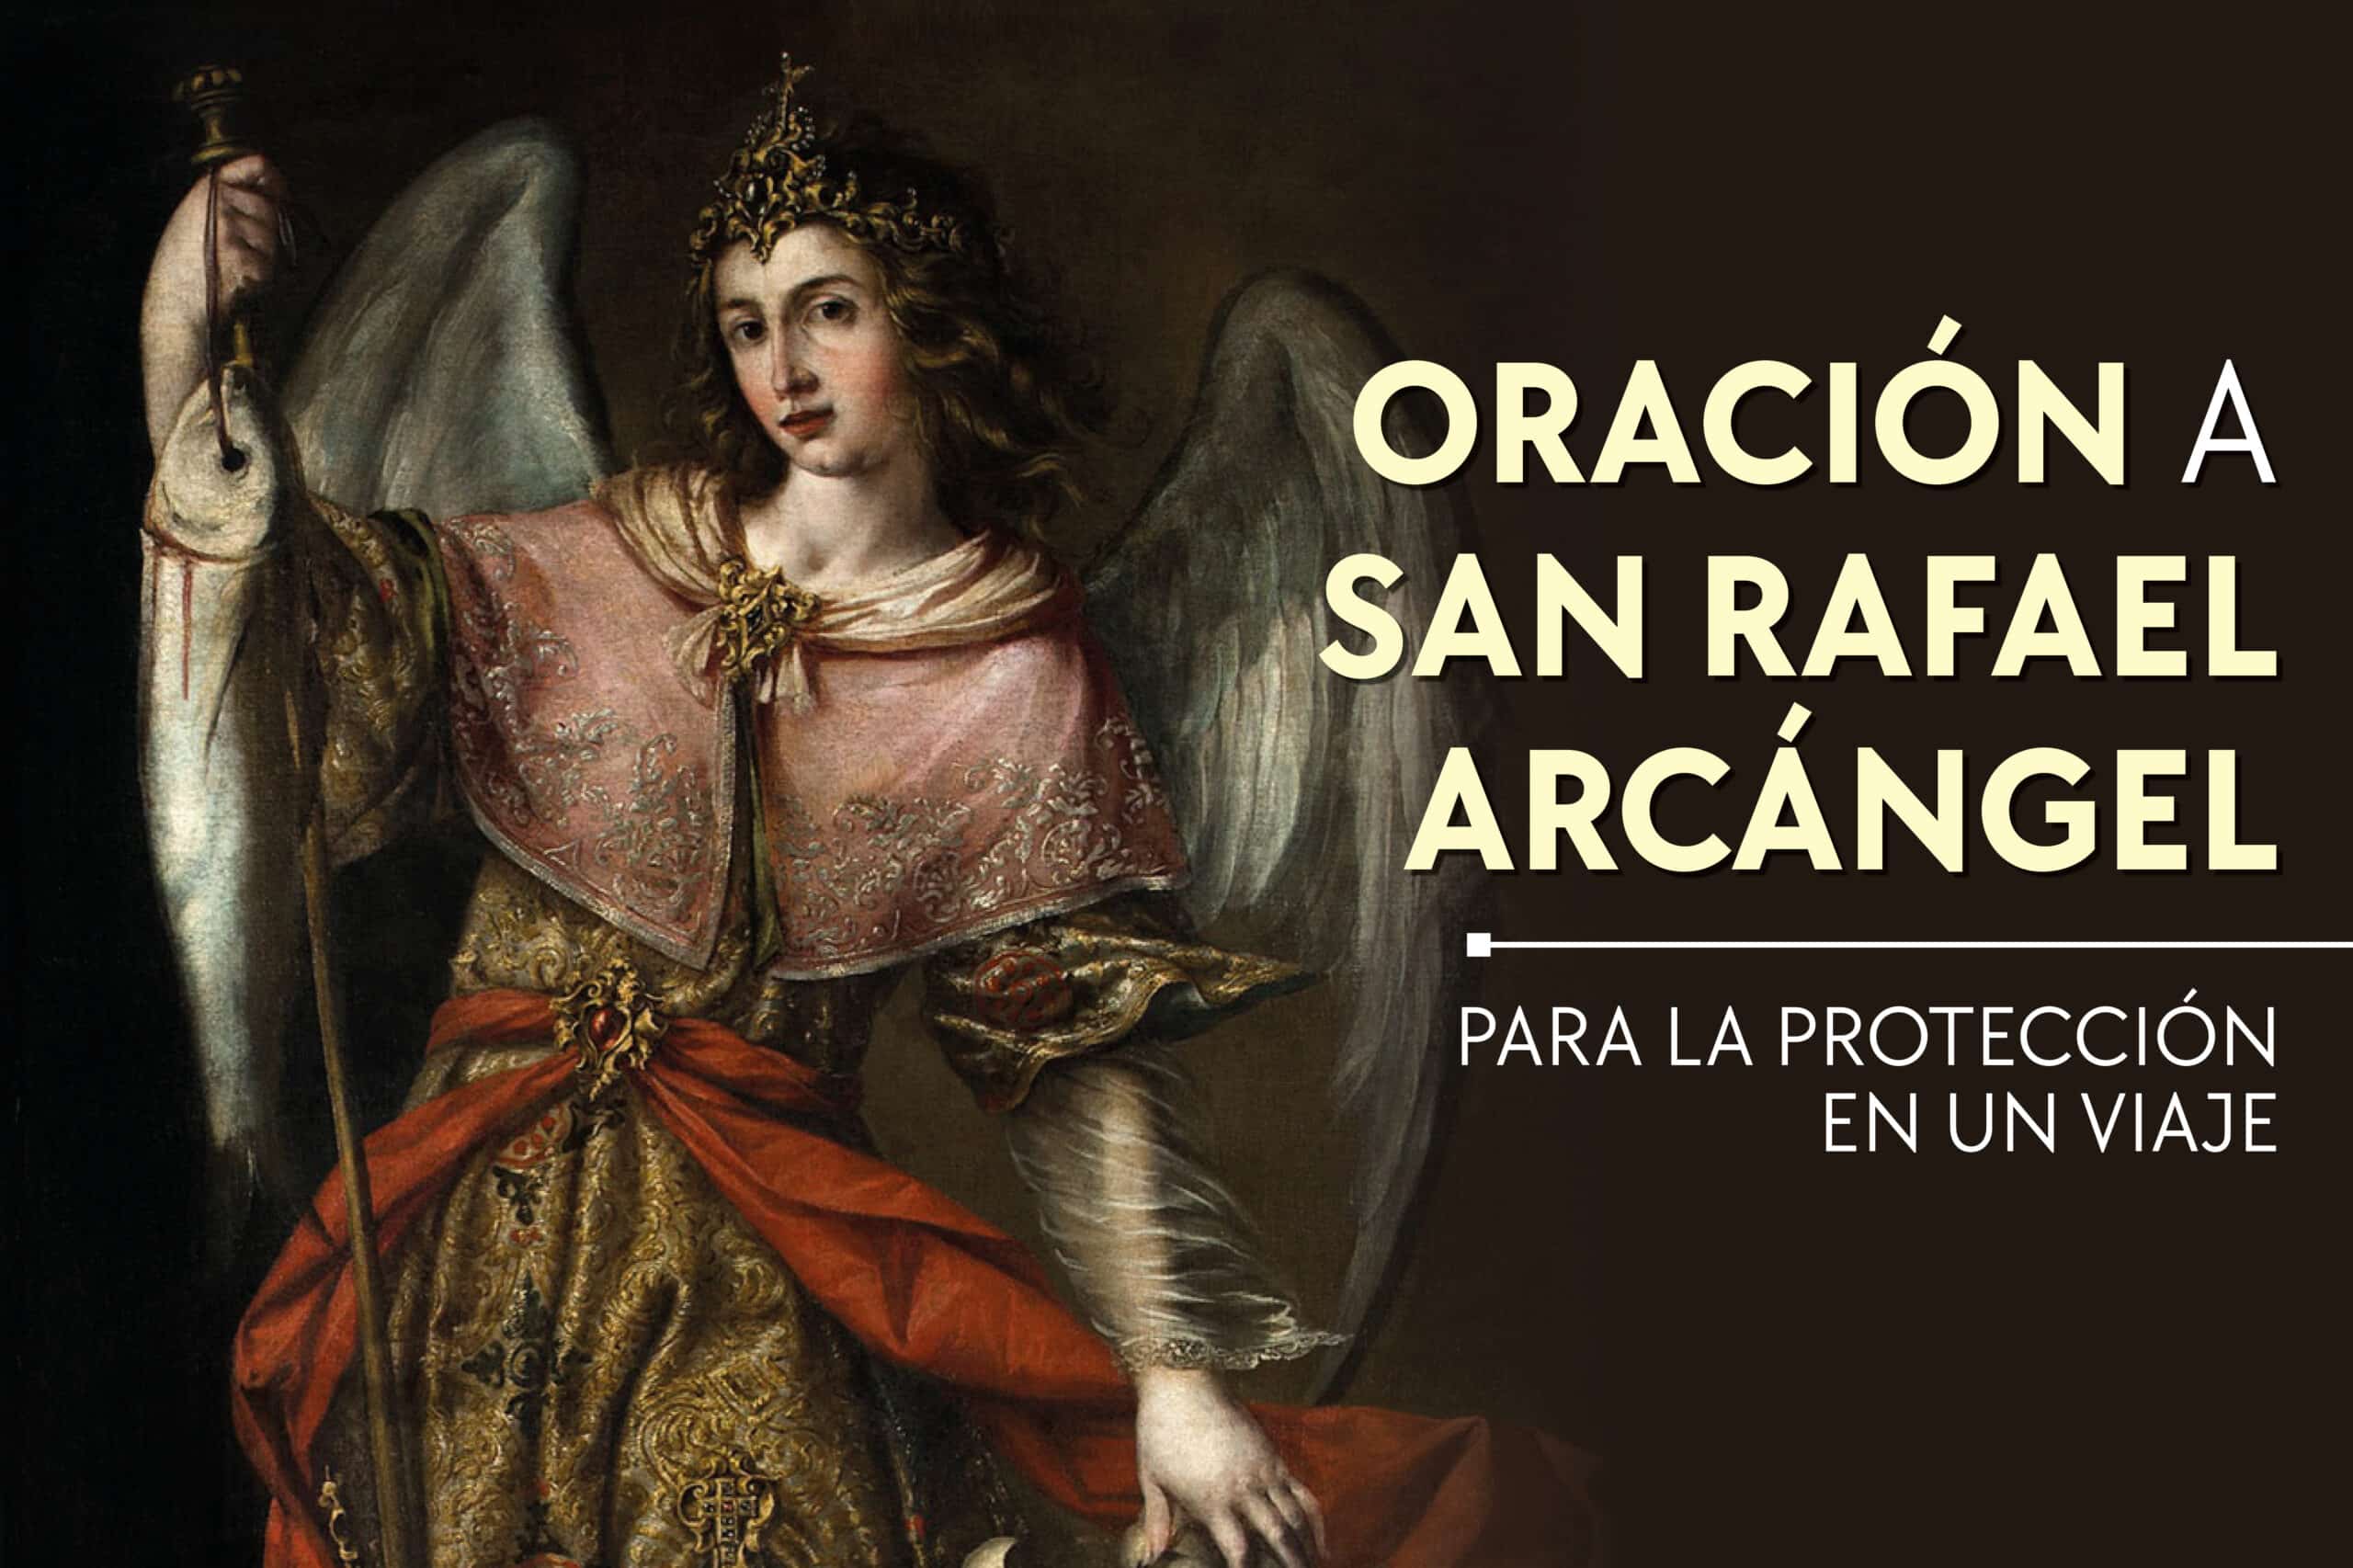 Oración a san Rafael Arcángel para la protección en un viaje